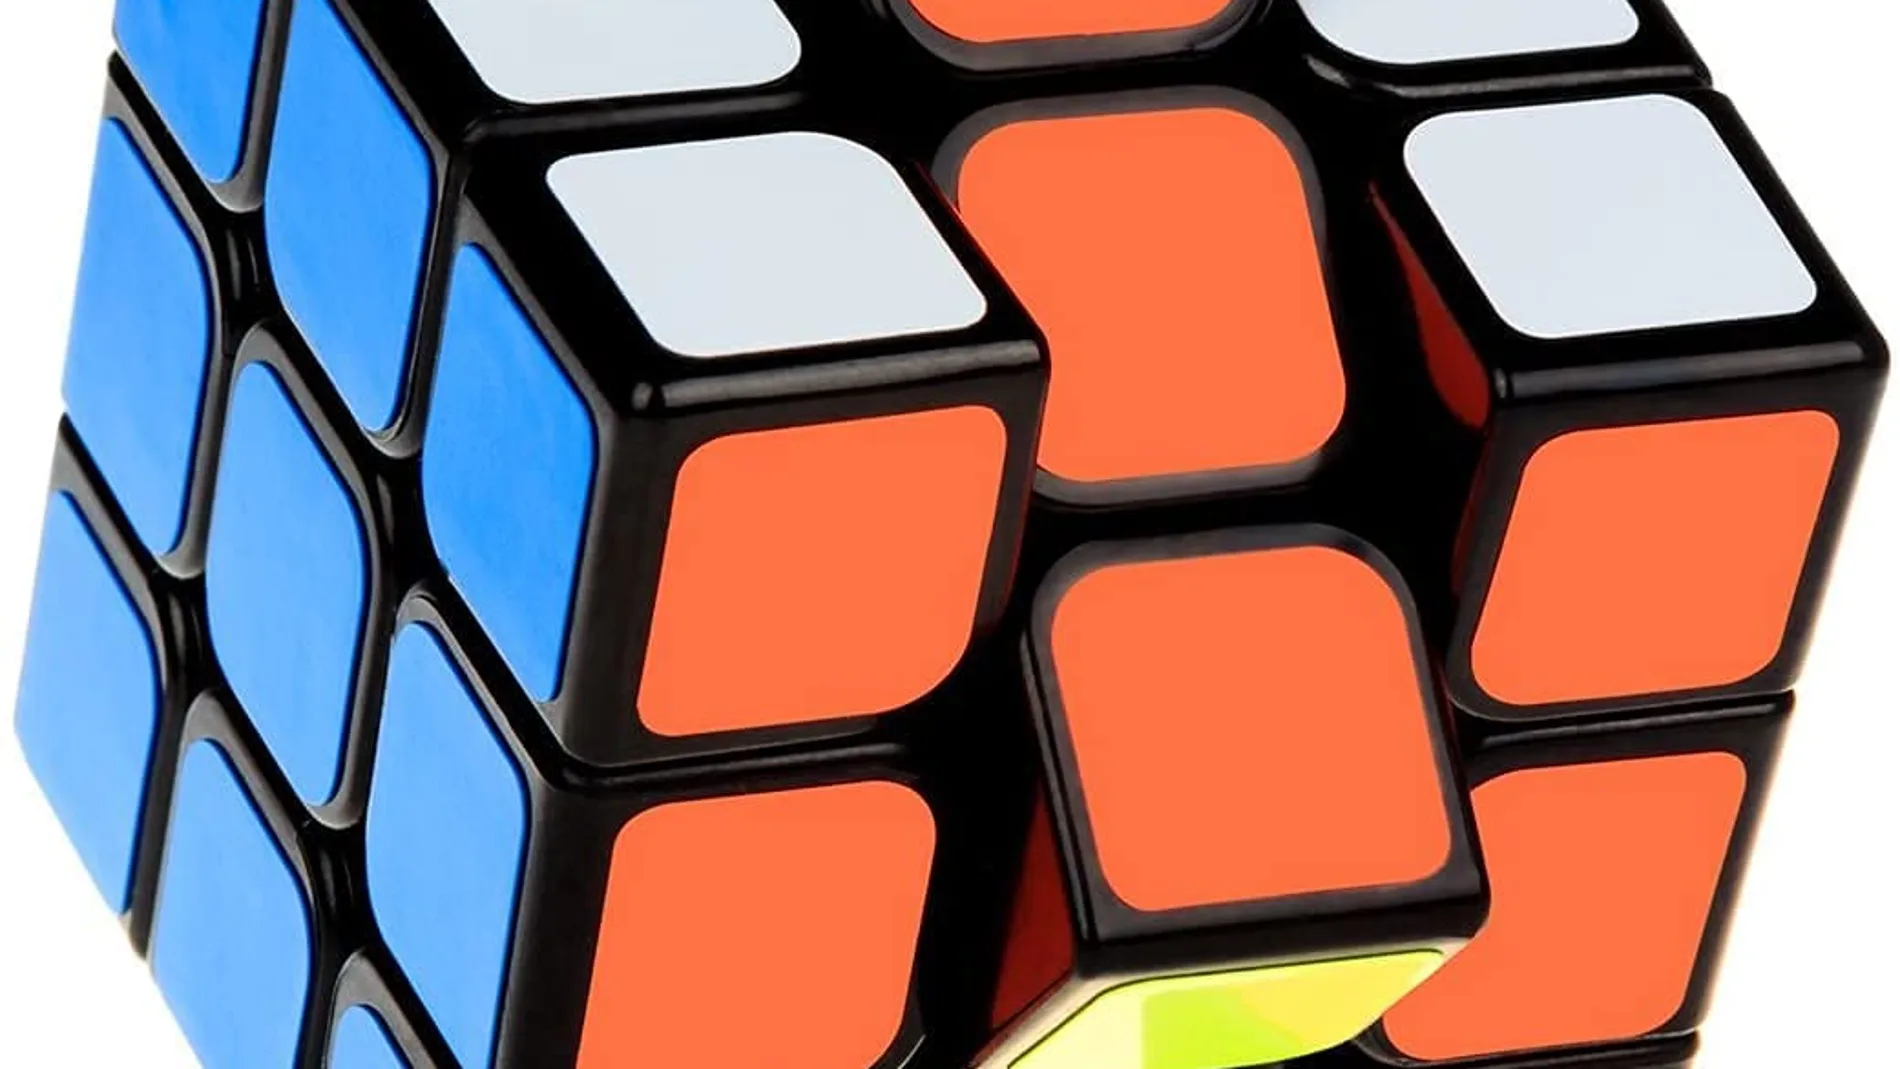 El cubo de Rubik sigue aquí tienes el modelo clásico y algunas